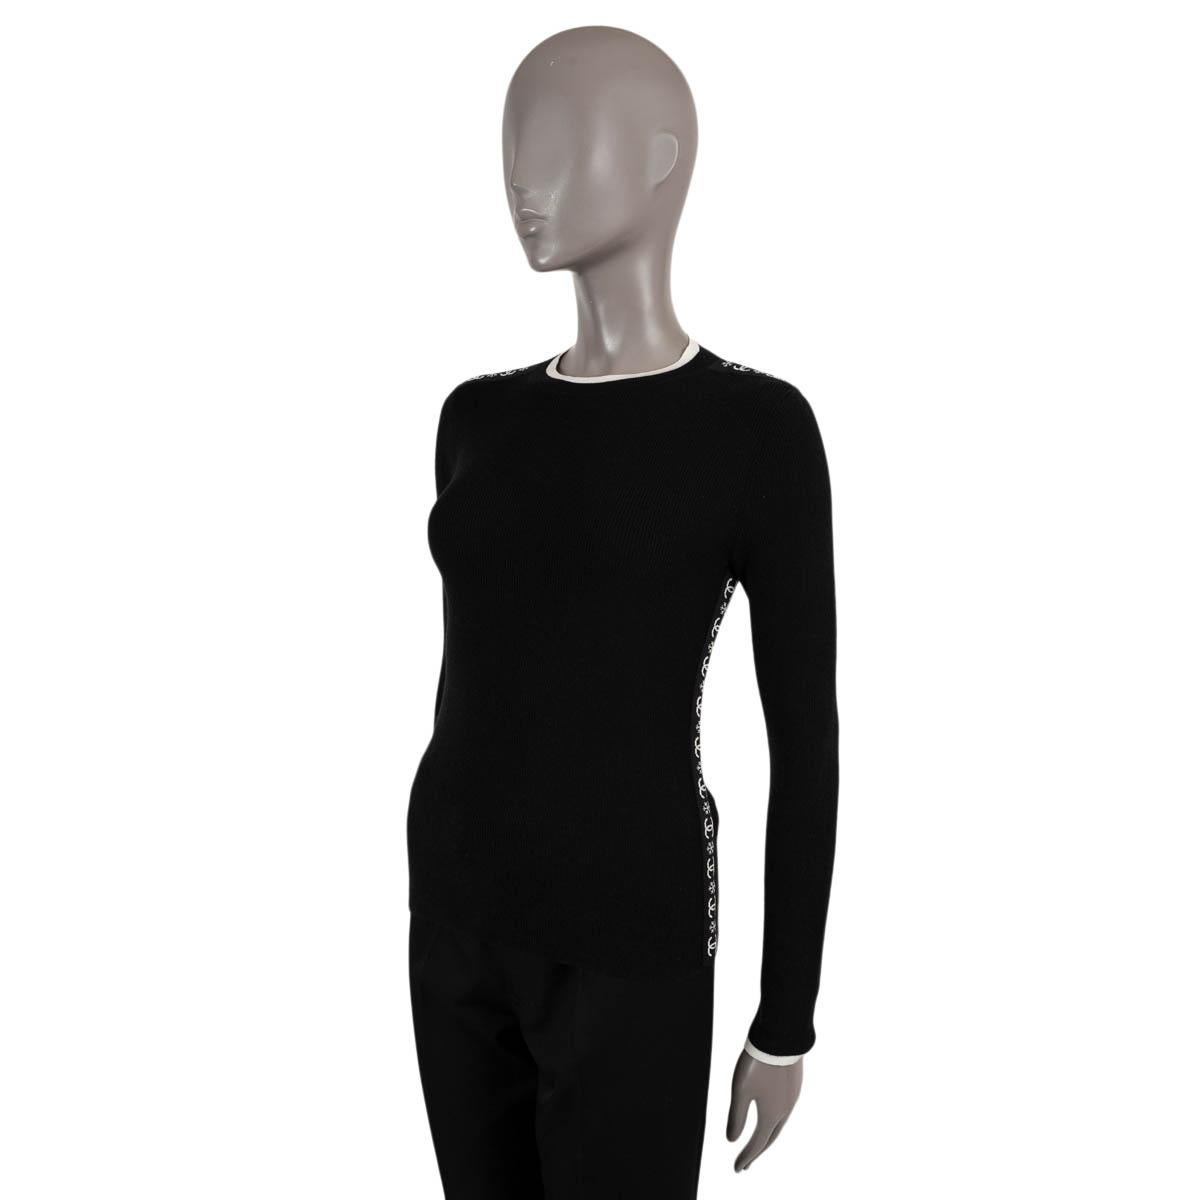 100% authentischer Chanel Pullover aus schwarzem Kaschmir (100%). Rundhalsausschnitt mit cremefarbenem Kontrastbesatz und cremefarbenen CC- und Schneeflocken-Schulter- und Seitenstreifen. Unbeschriftet. Wurde getragen und ist in ausgezeichnetem